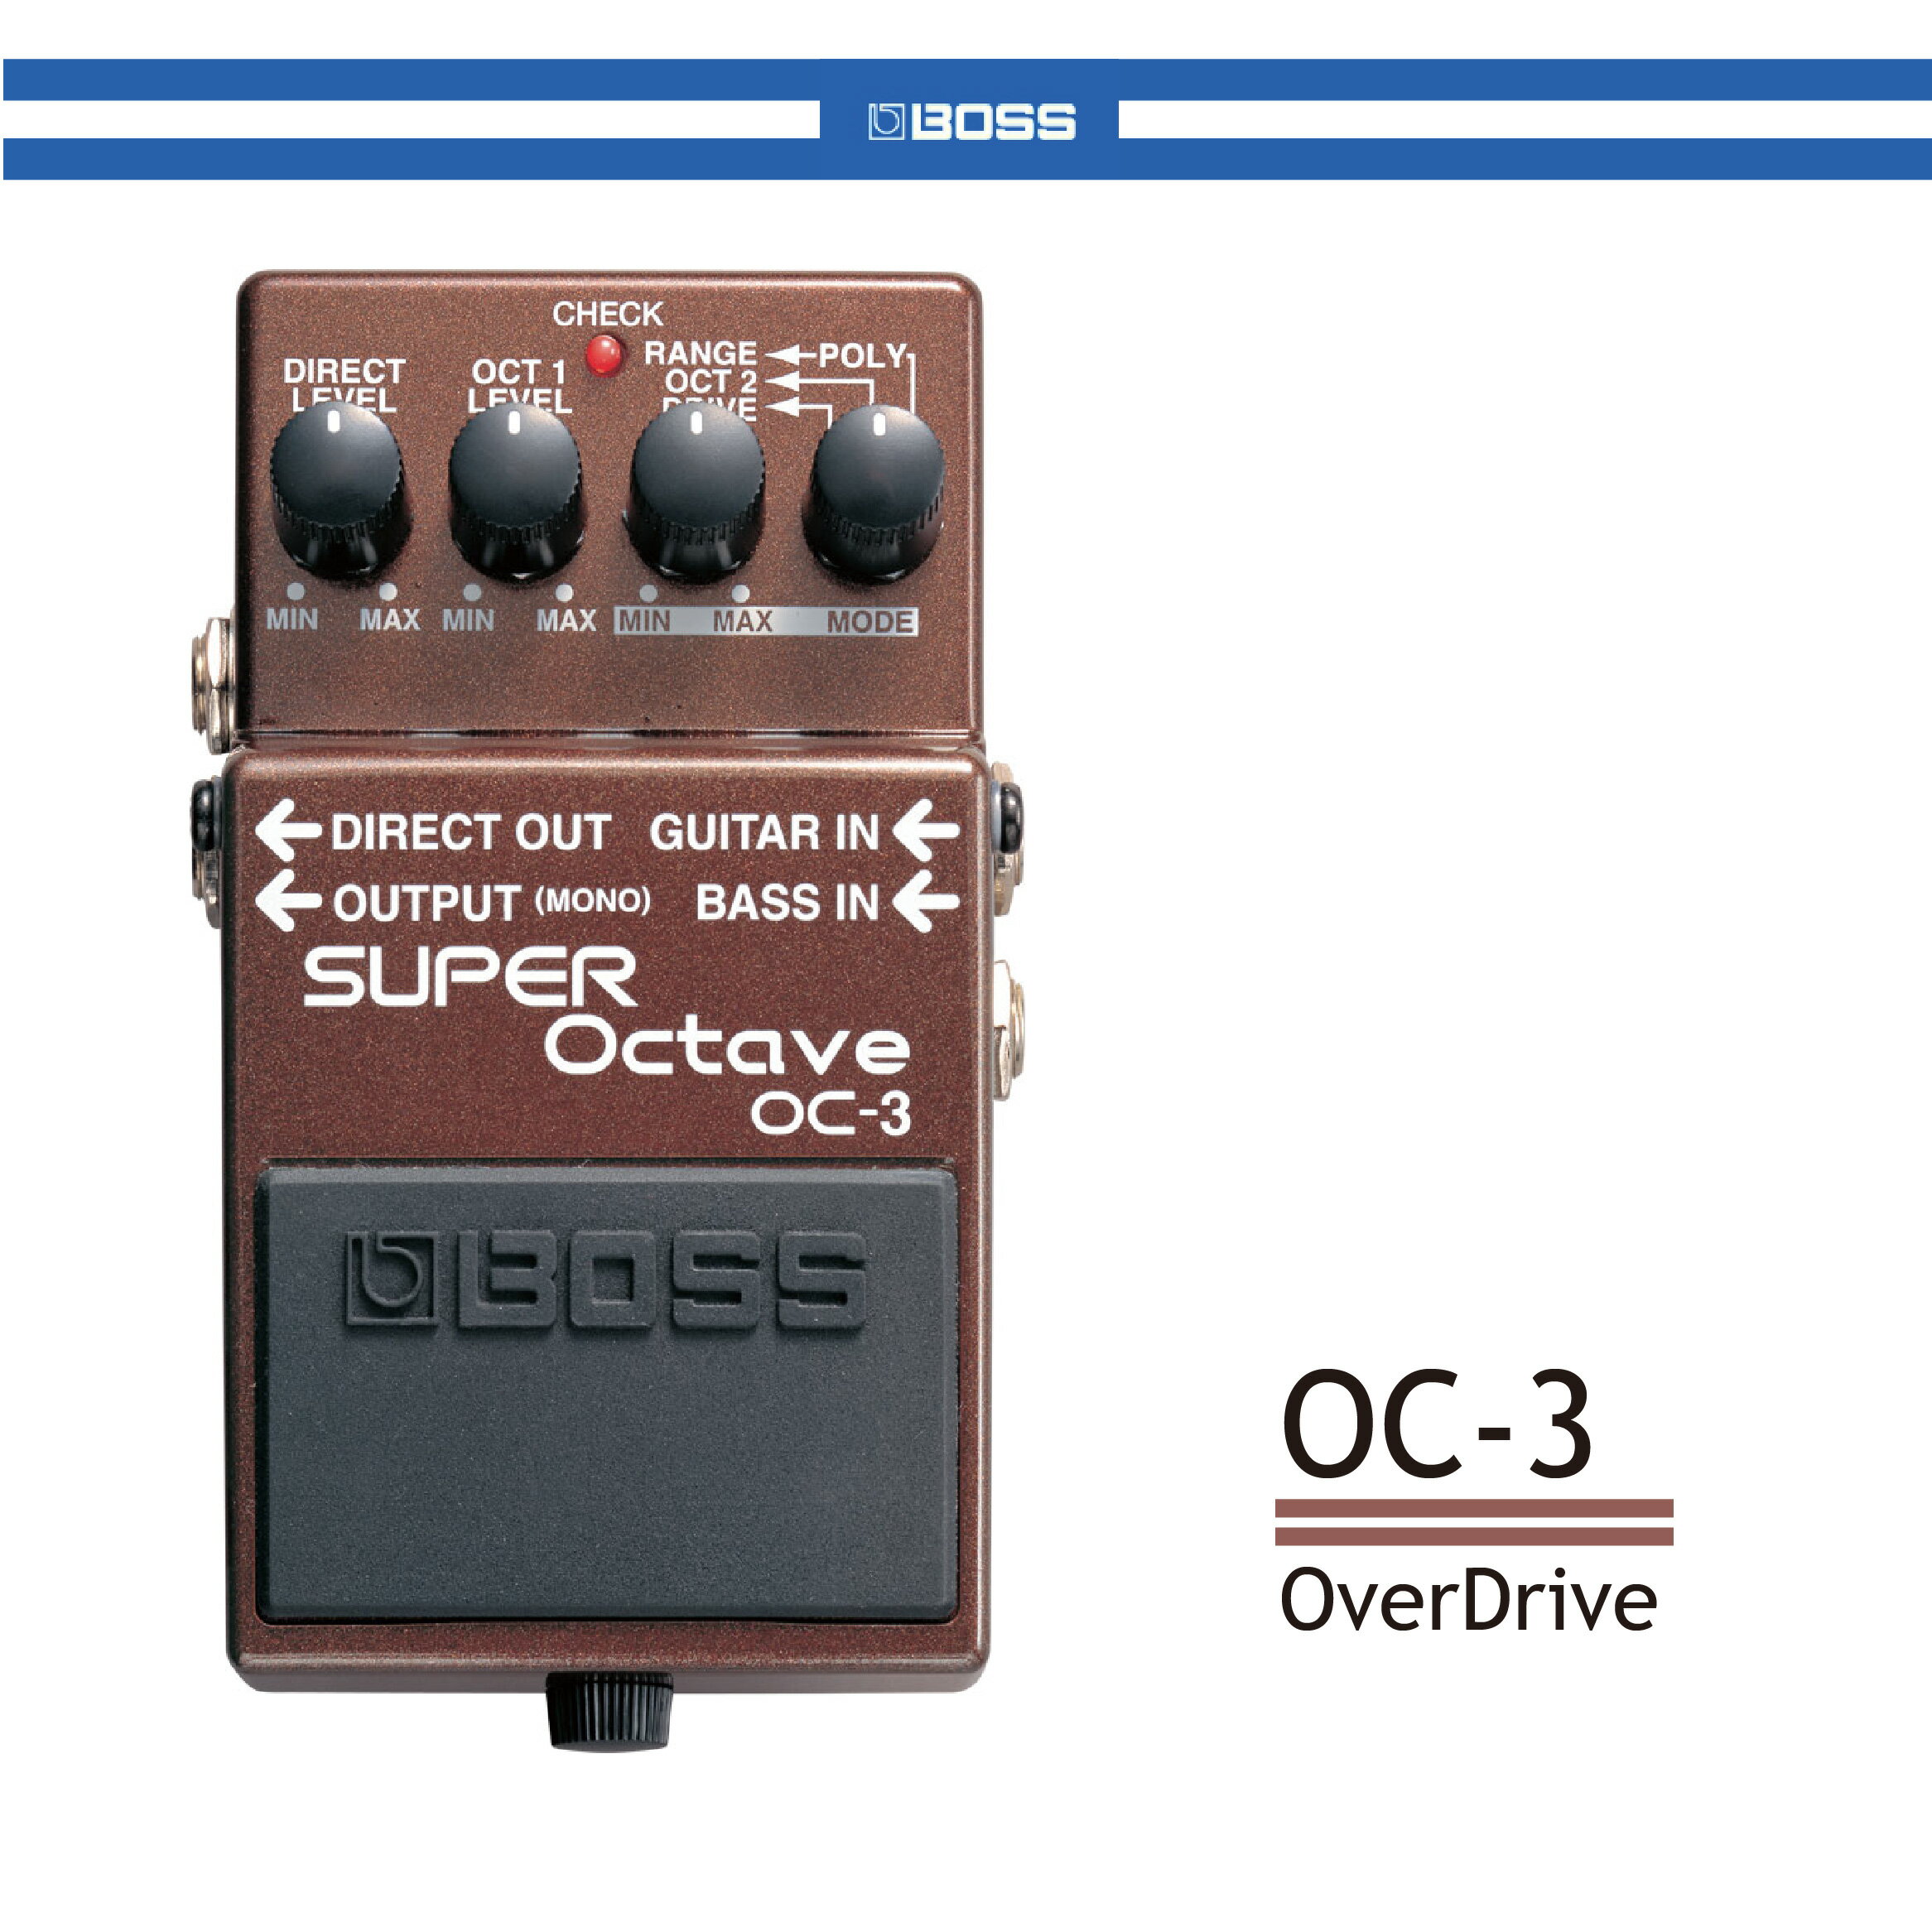 【非凡樂器】BOSS OC-3 Super Octave 超級八度音 OC-3可以製造出三個分開的聲音-原始音、低一個八度音、與低兩個八度音